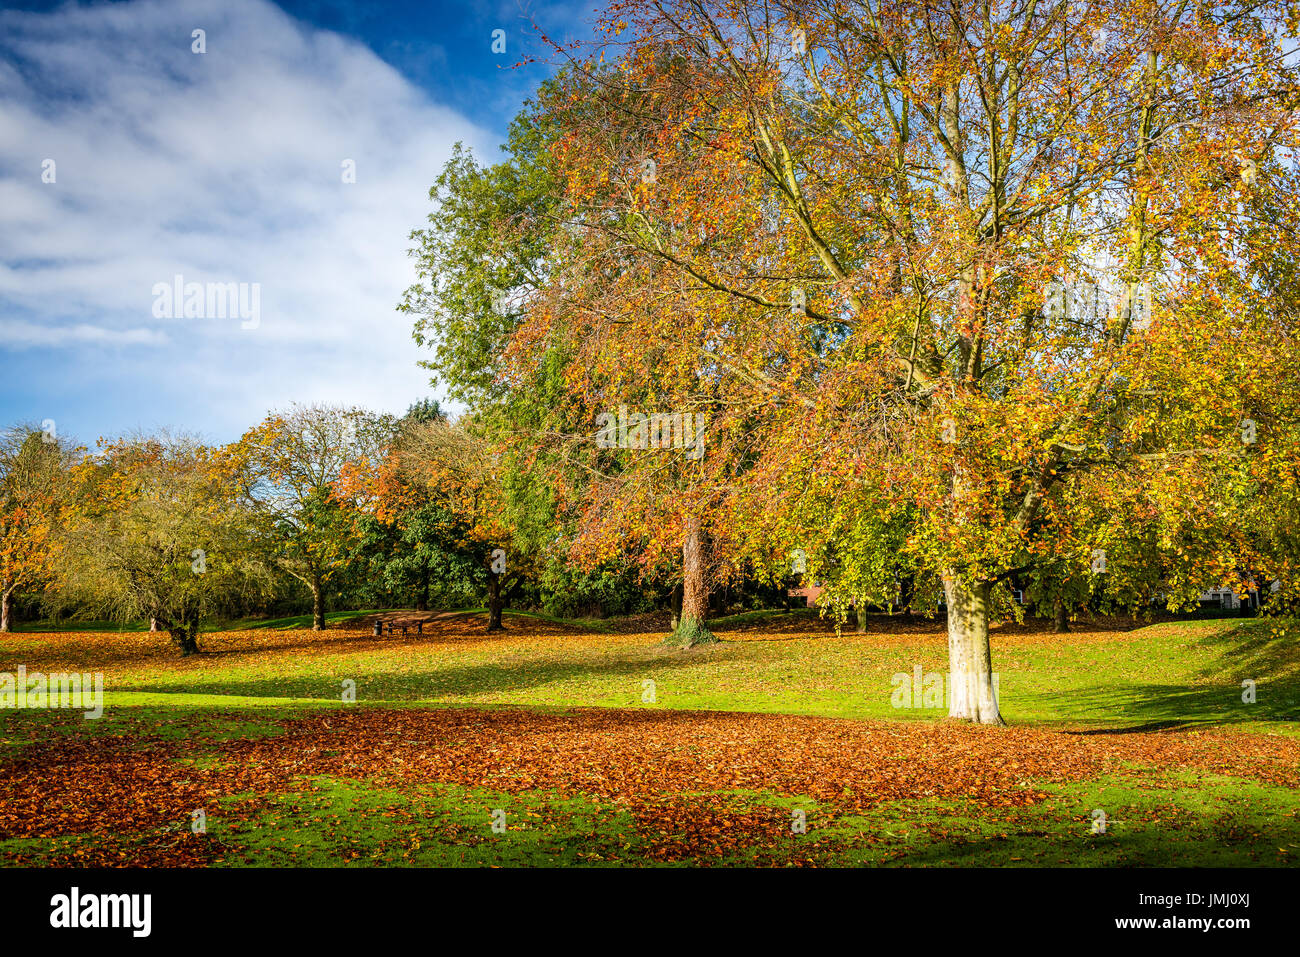 Dorate naturali sfumature e colori dell'autunno alberi dominano la scena nella testa del pozzo parco pubblico di Bourne, Lincolnshire, Regno Unito Foto Stock